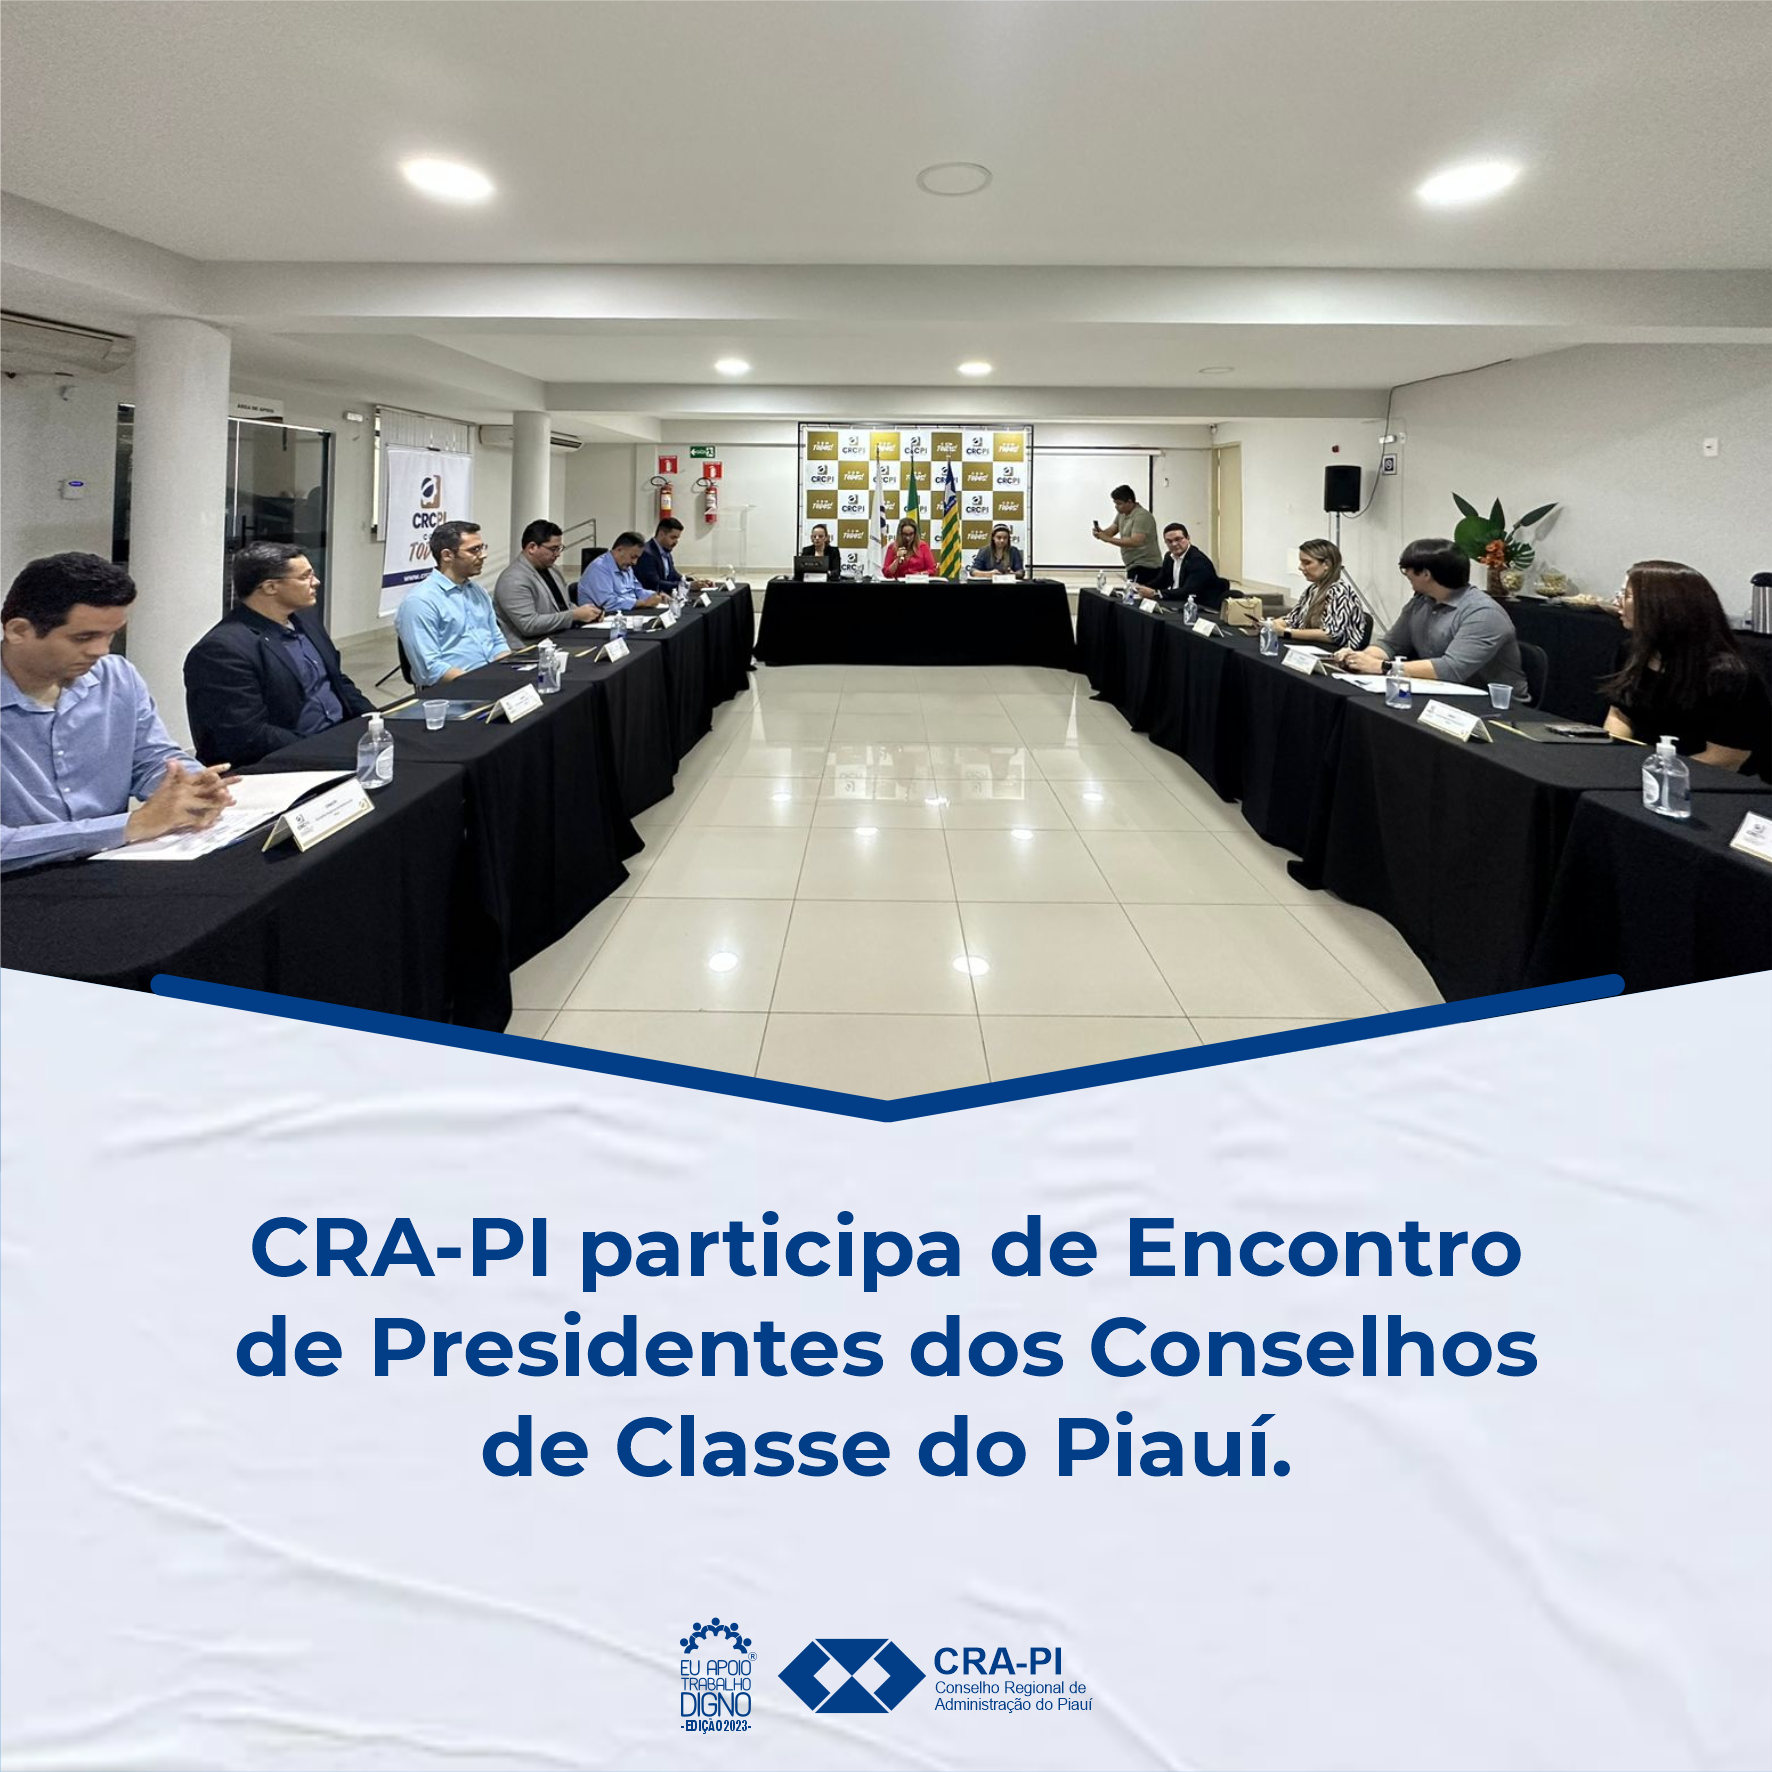 CRA-PI participa de Encontro de Presidentes dos Conselhos de Classe do Piauí